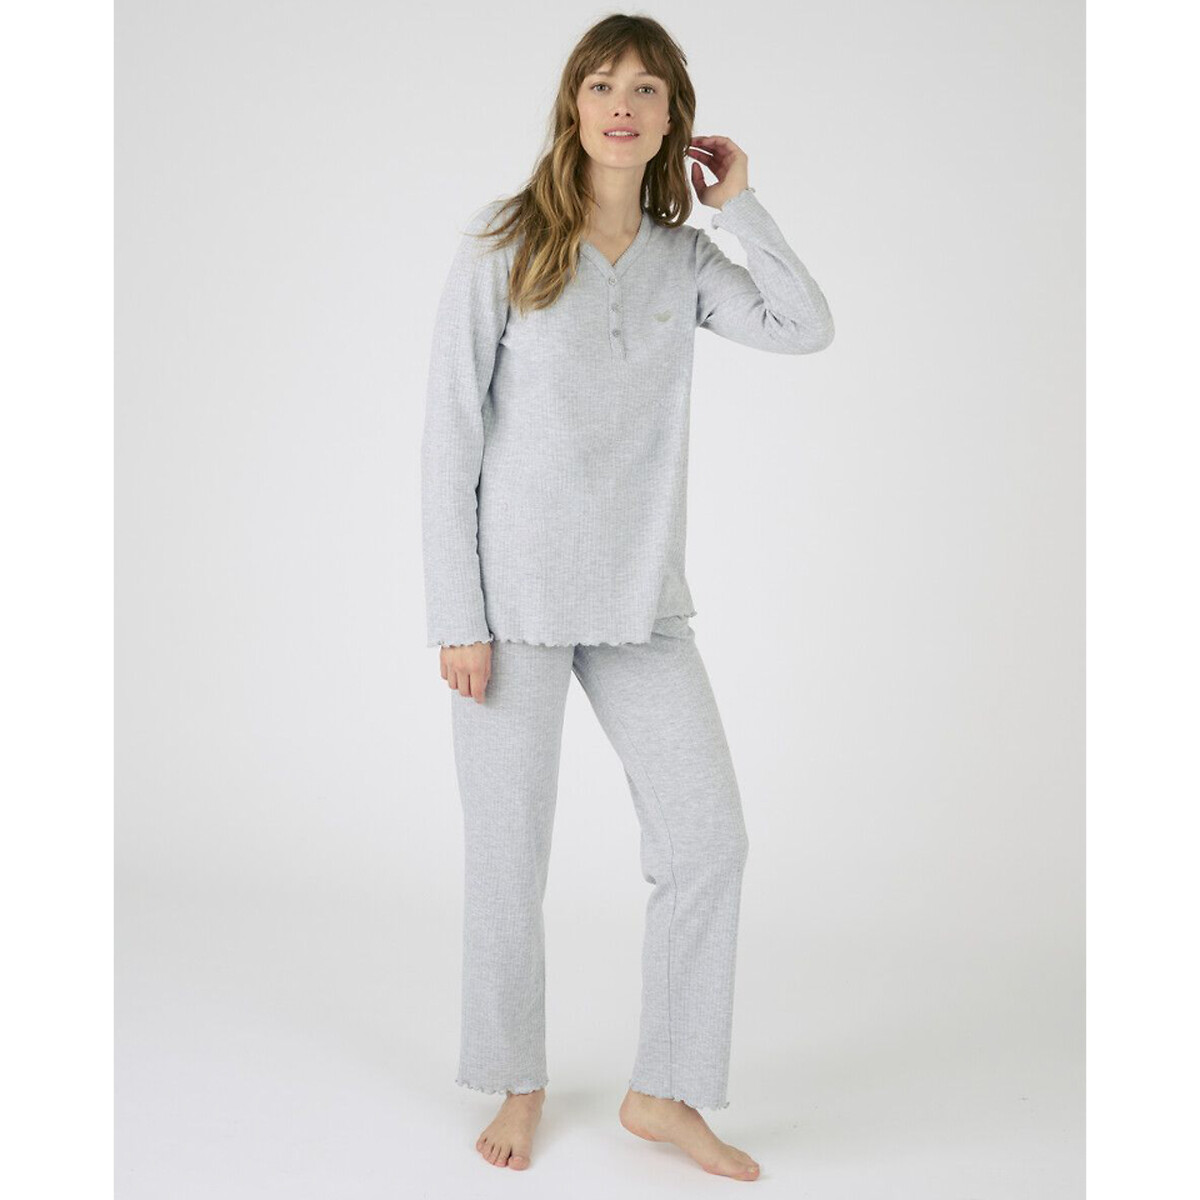 Комплект пижамный с длинными рукавами La Redoute XL серый комплект пижамный домашний la redoute xxl белый